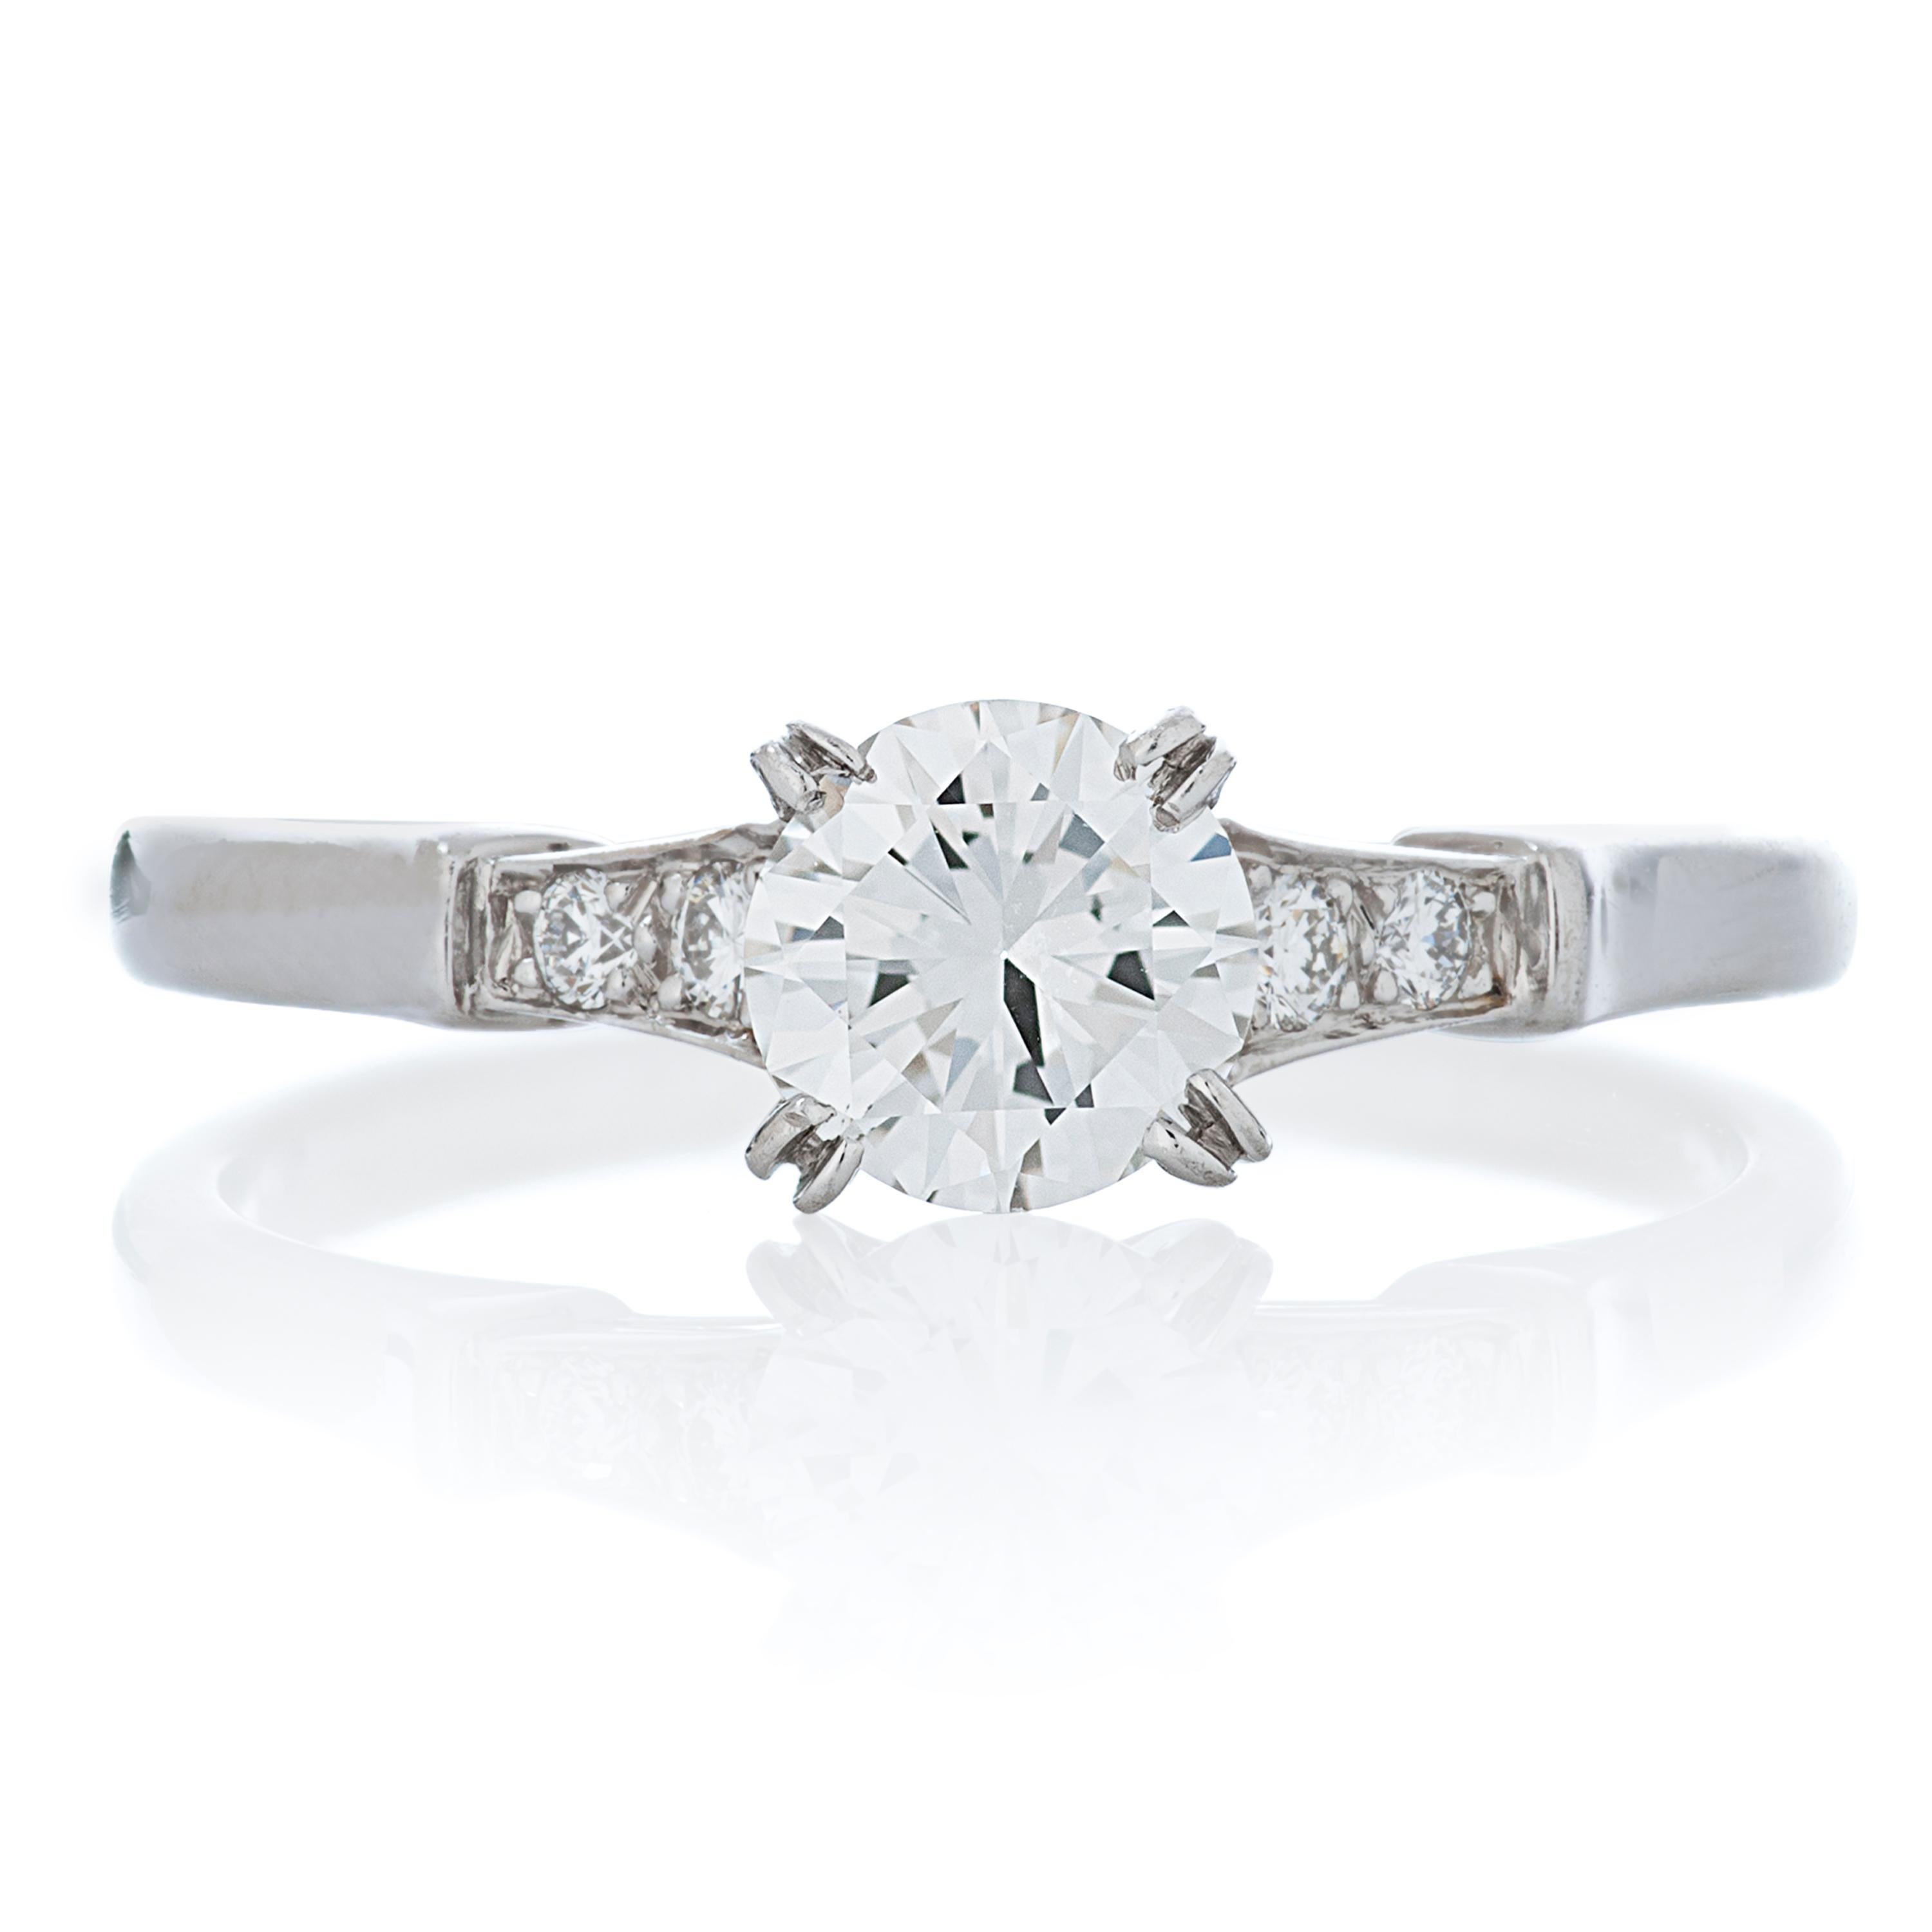 J.E. Runder Diamant-Verlobungsring von Caldwell & Co. aus Platin.  

In diesem Ring befindet sich ein GIA-zertifizierter runder Brillant von 0,57 Karat mit der Farbe E und der Reinheit VVS2 in einer Platin-Krallenfassung, die von 4 weiteren runden